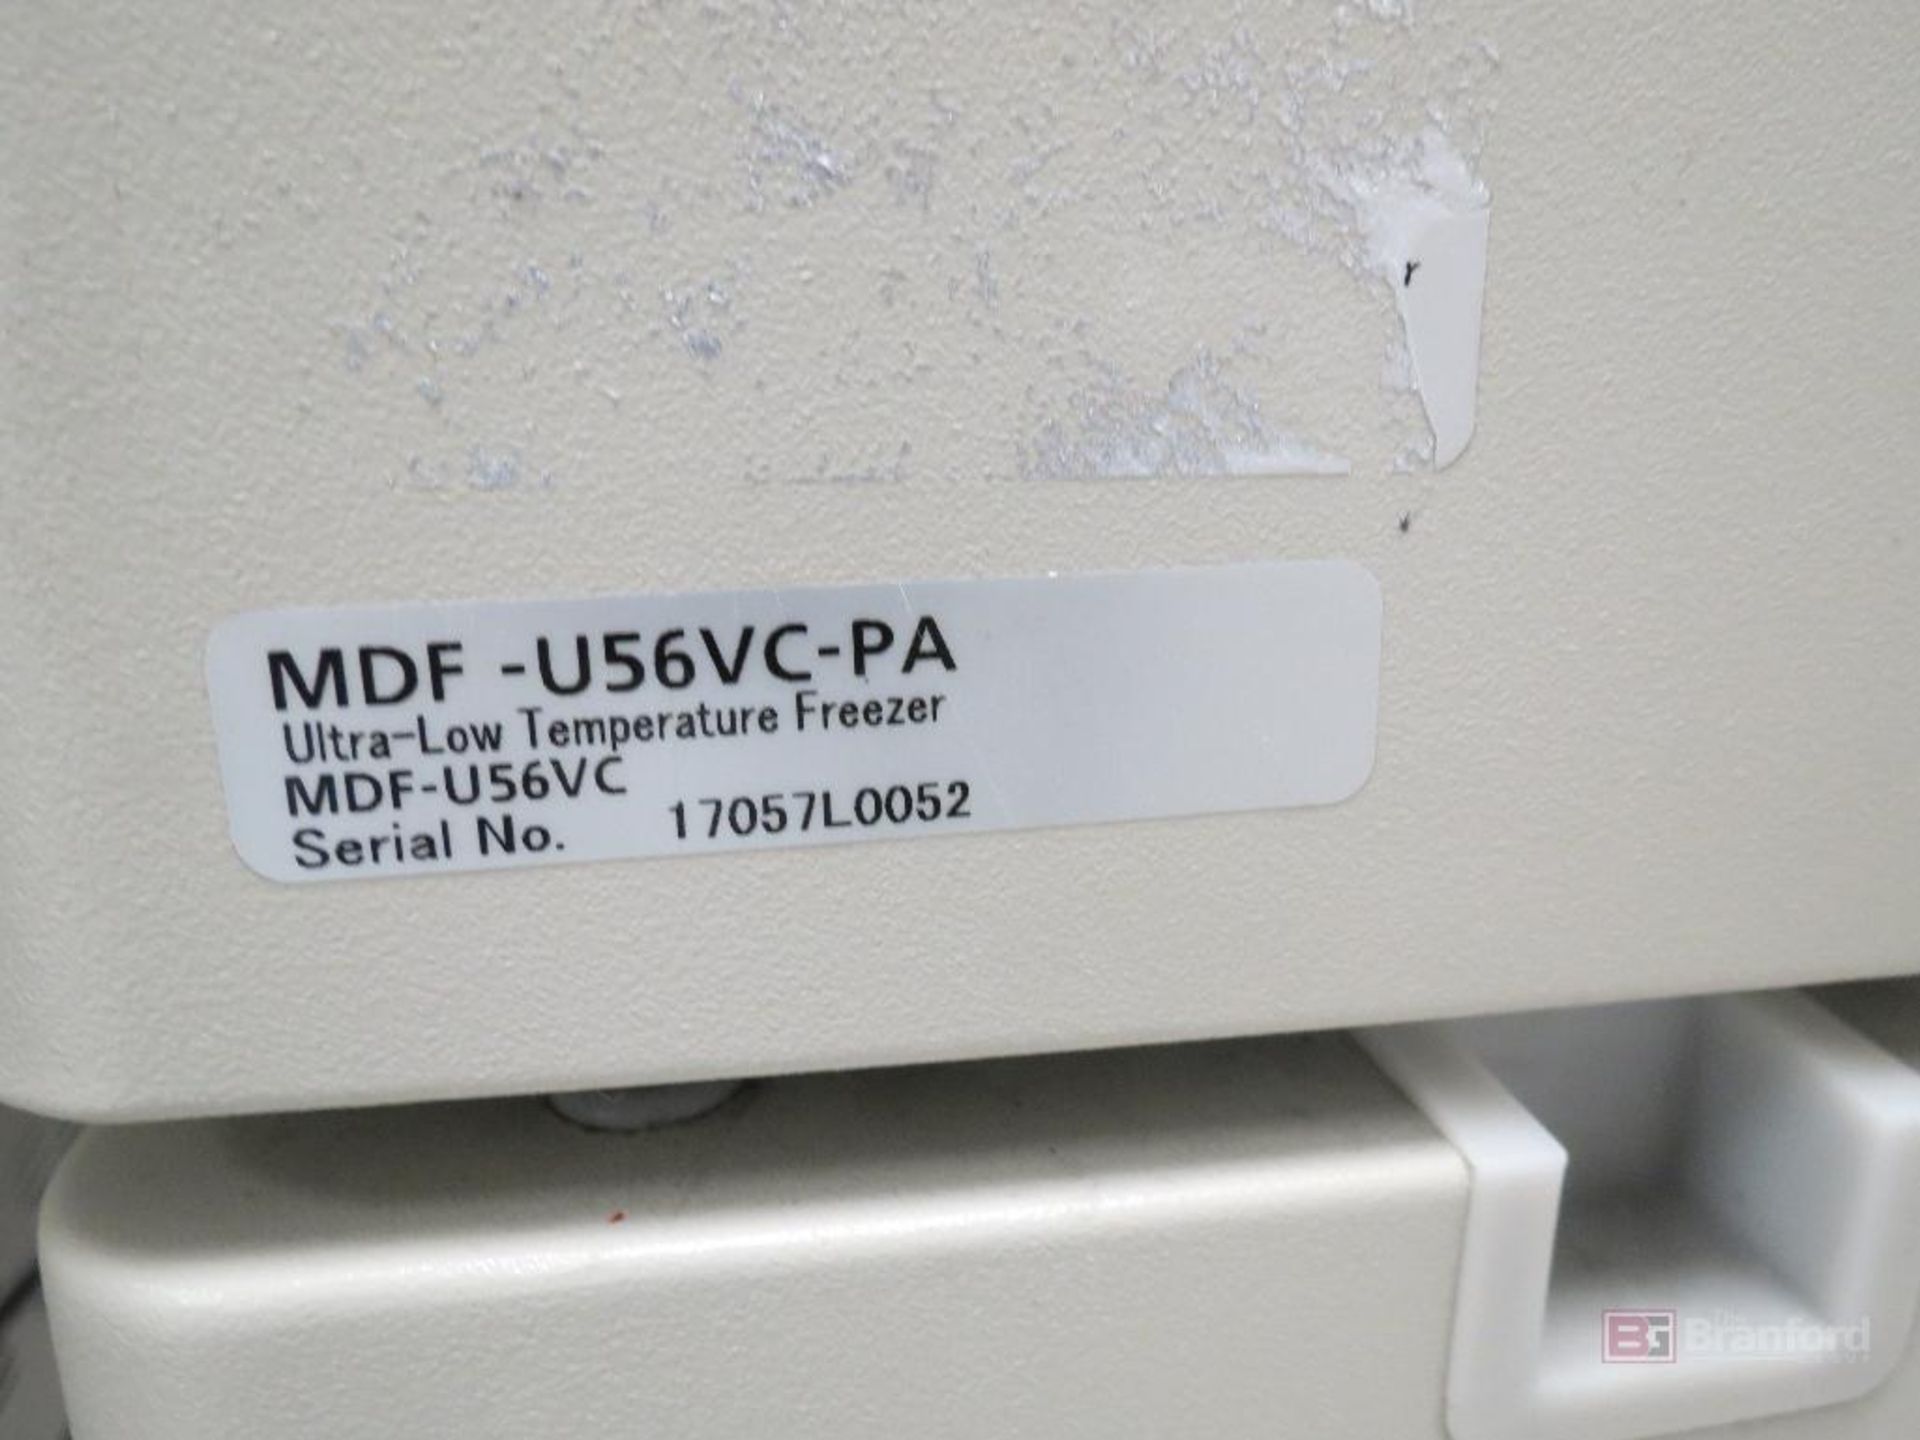 Panasonic MDF-U56VC-PA -86°C Ultra Low Freezer - Image 4 of 4